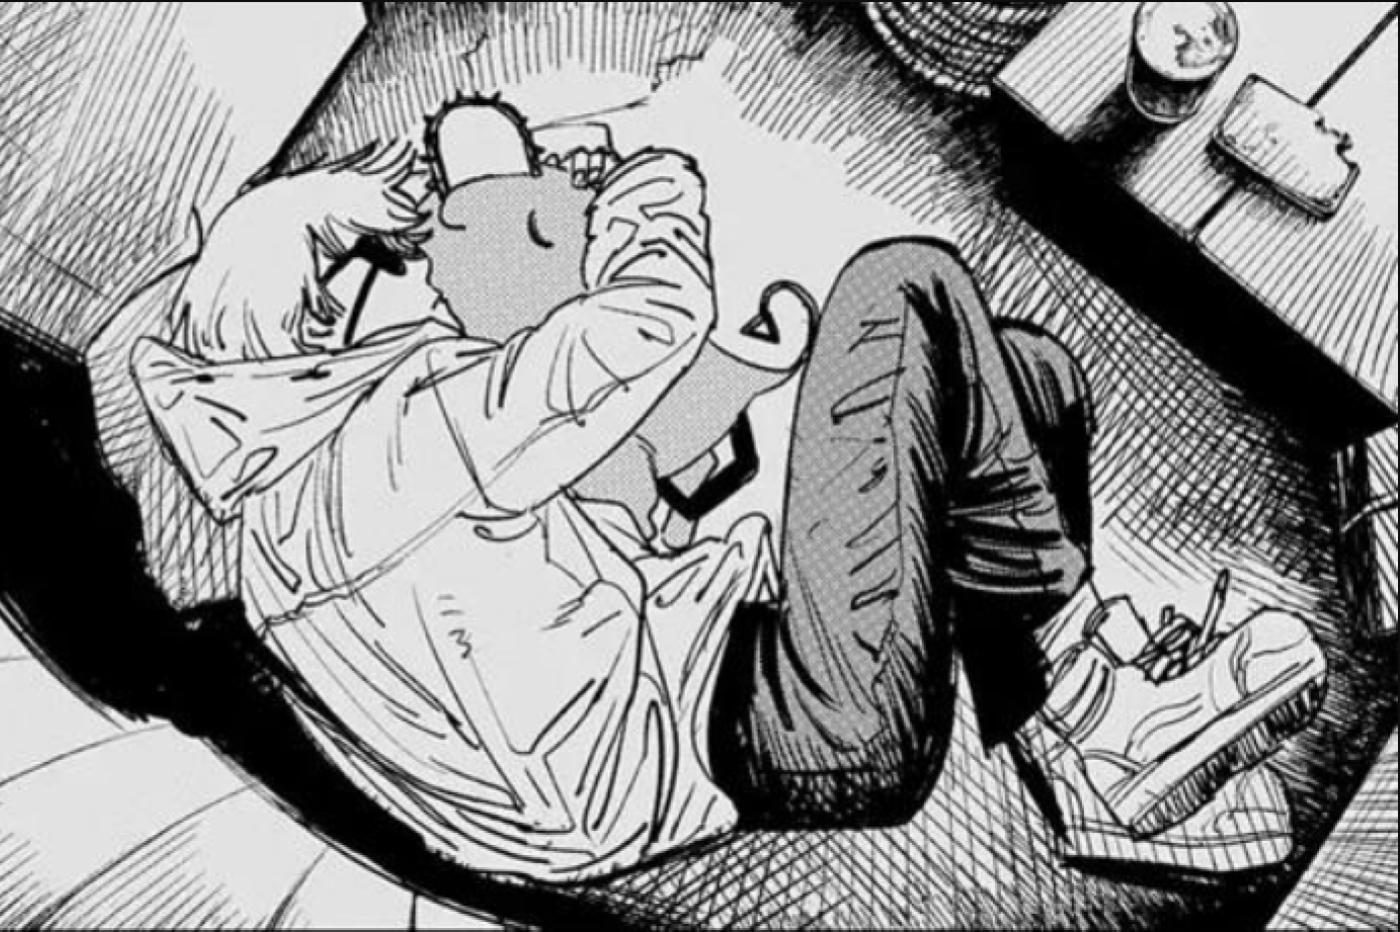 Extrait du manga Chainsaw Man avec Denji faisant un câlin à Pochita le chien-tronçonneuse